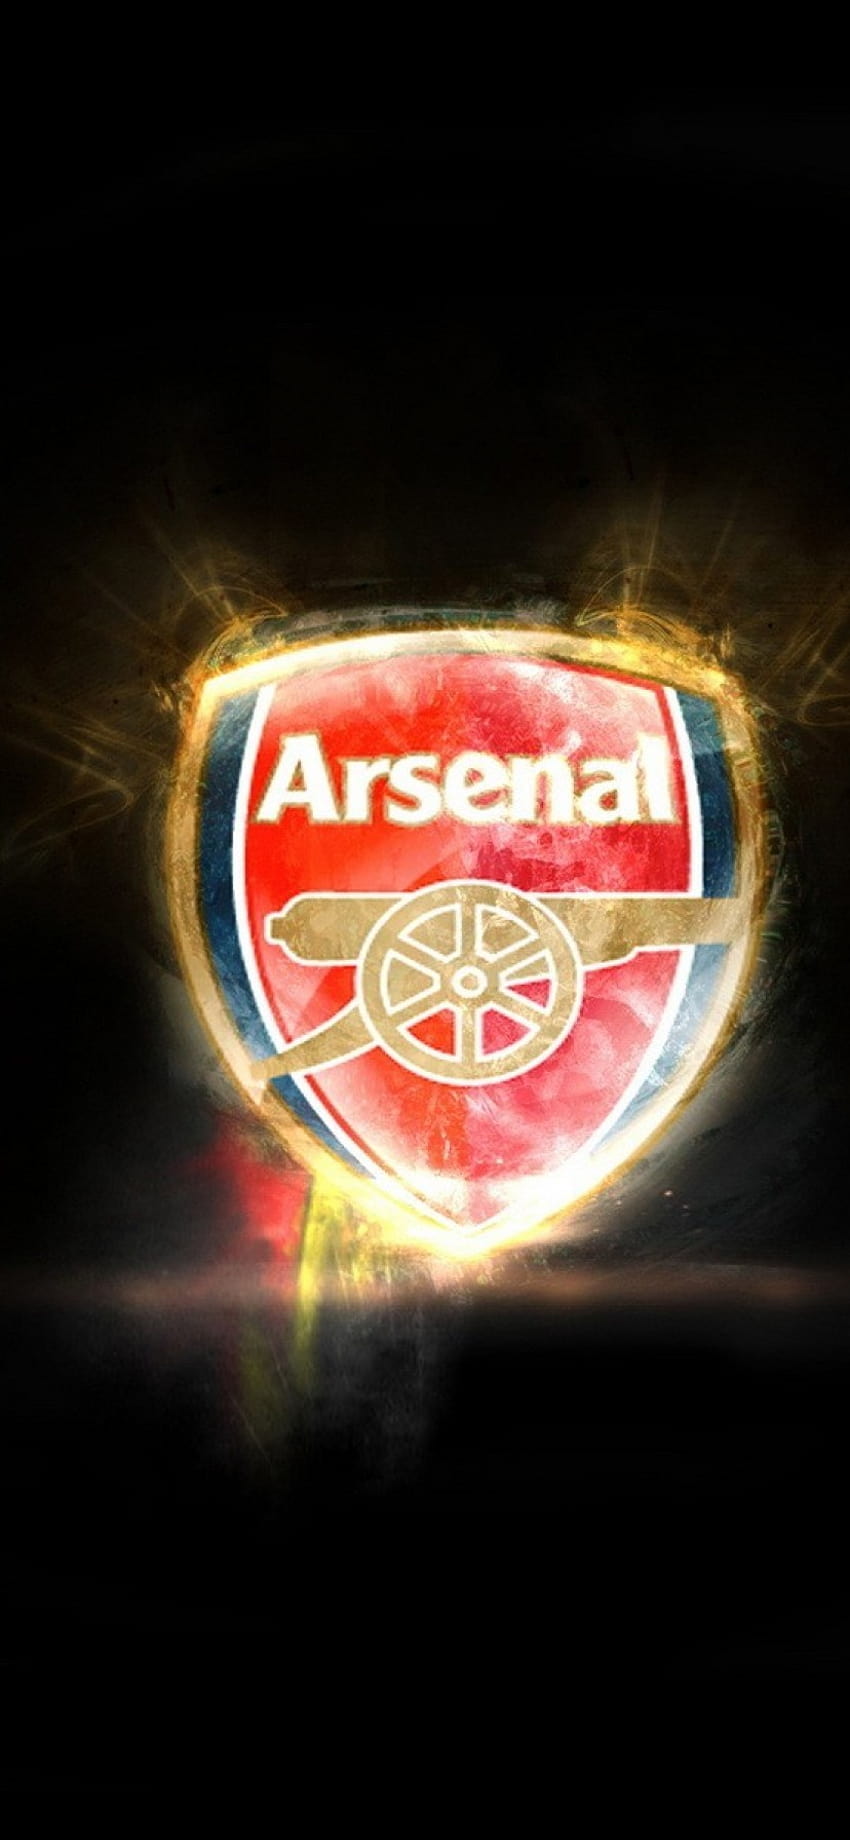 Arsenal iPhone XR HD là hình nền đẹp nhất dành cho người hâm mộ Arsenal và yêu thích iPhone. Nó mang lại cảm giác tự hào và lòng yêu thương cho CLB lâu đời này. Hãy cảm nhận sự khác biệt của hình nền Arsenal iPhone XR HD.